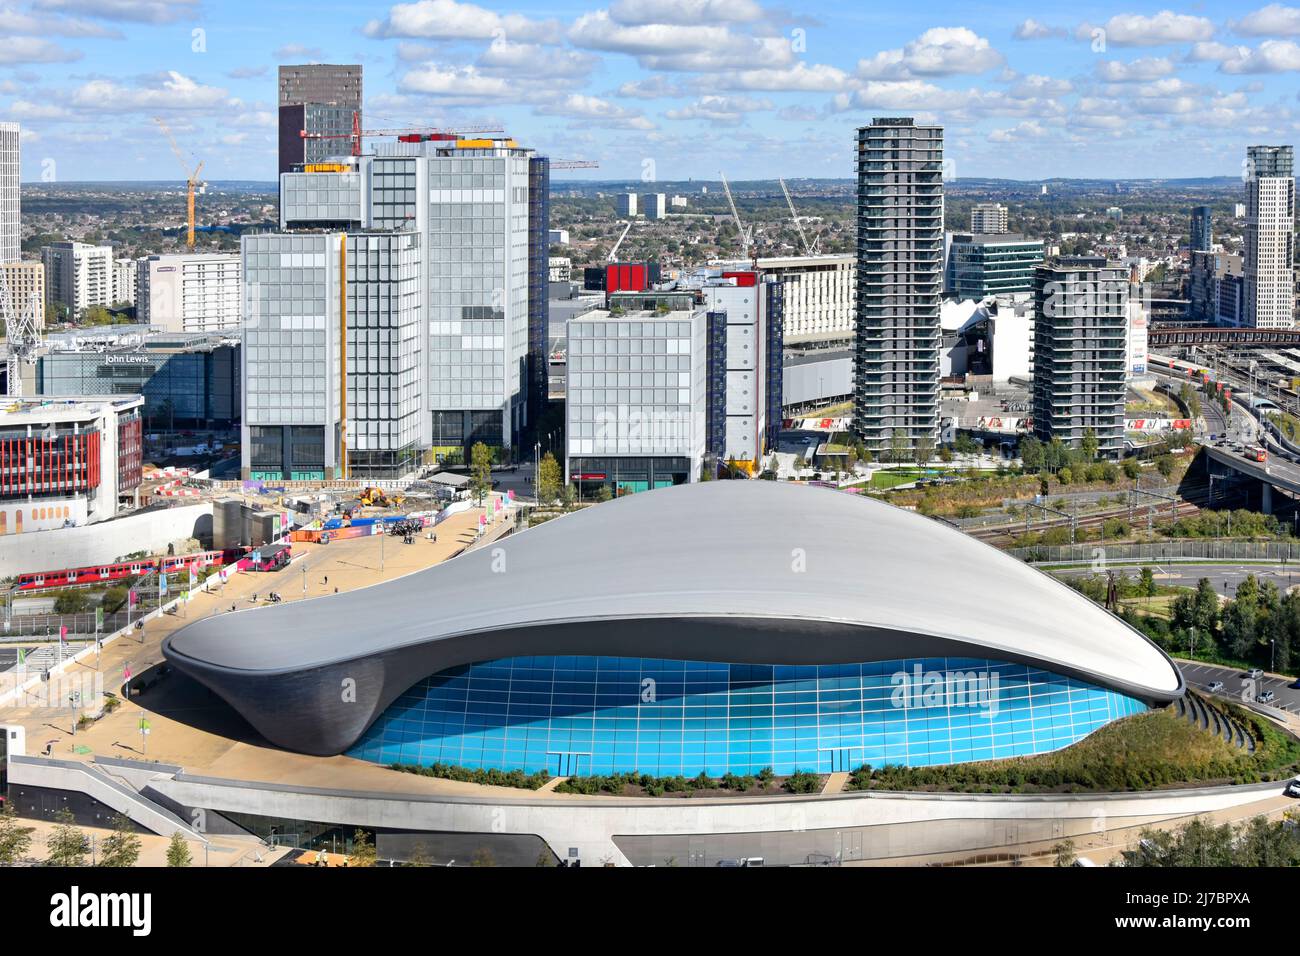 Développement de l'horizon et de la vue aérienne futuriste East London Stratford Aquatics Centre par Zaha Hadid dans le parc olympique Queen Elizabeth Newham Angleterre Banque D'Images